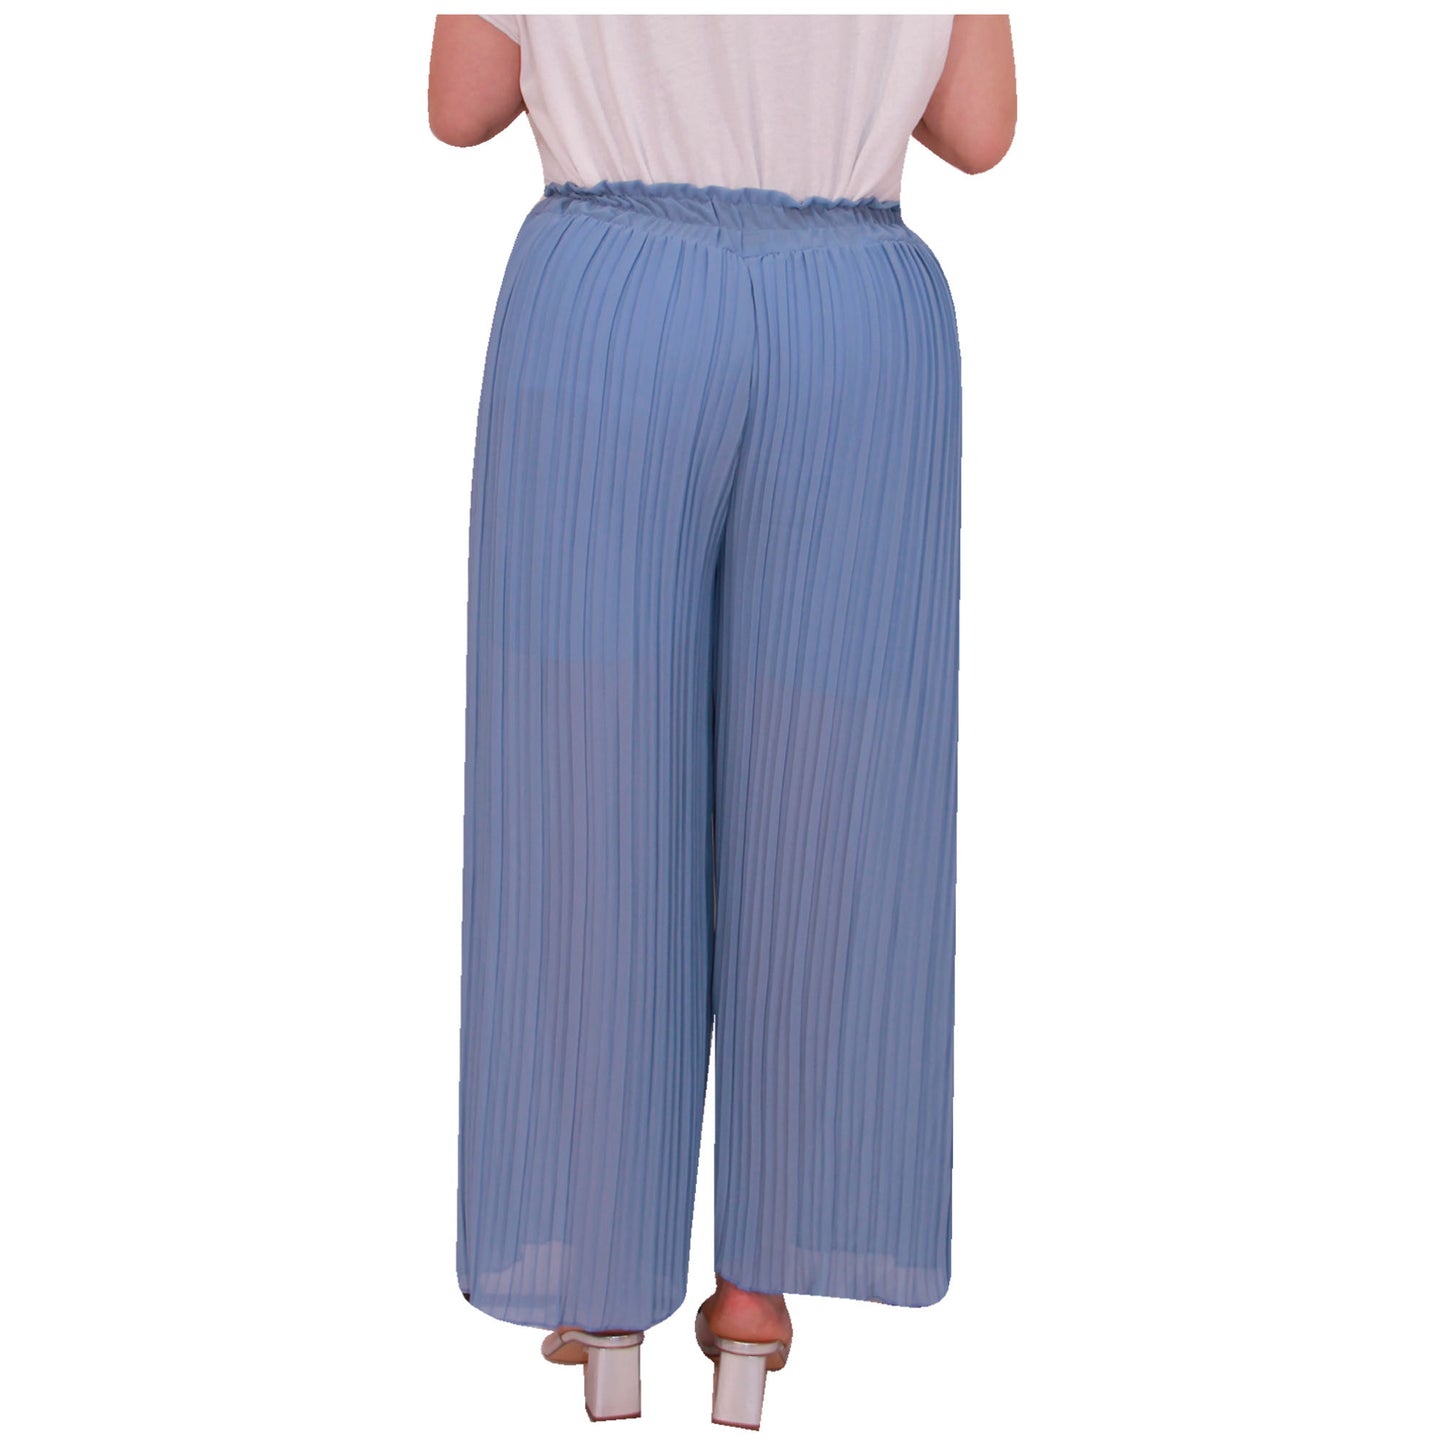 Zwierig en chic: geplooide palazzo-broek voor dames met wijde pijpen en chiffonstof voor kantoor- en vrijetijdskleding